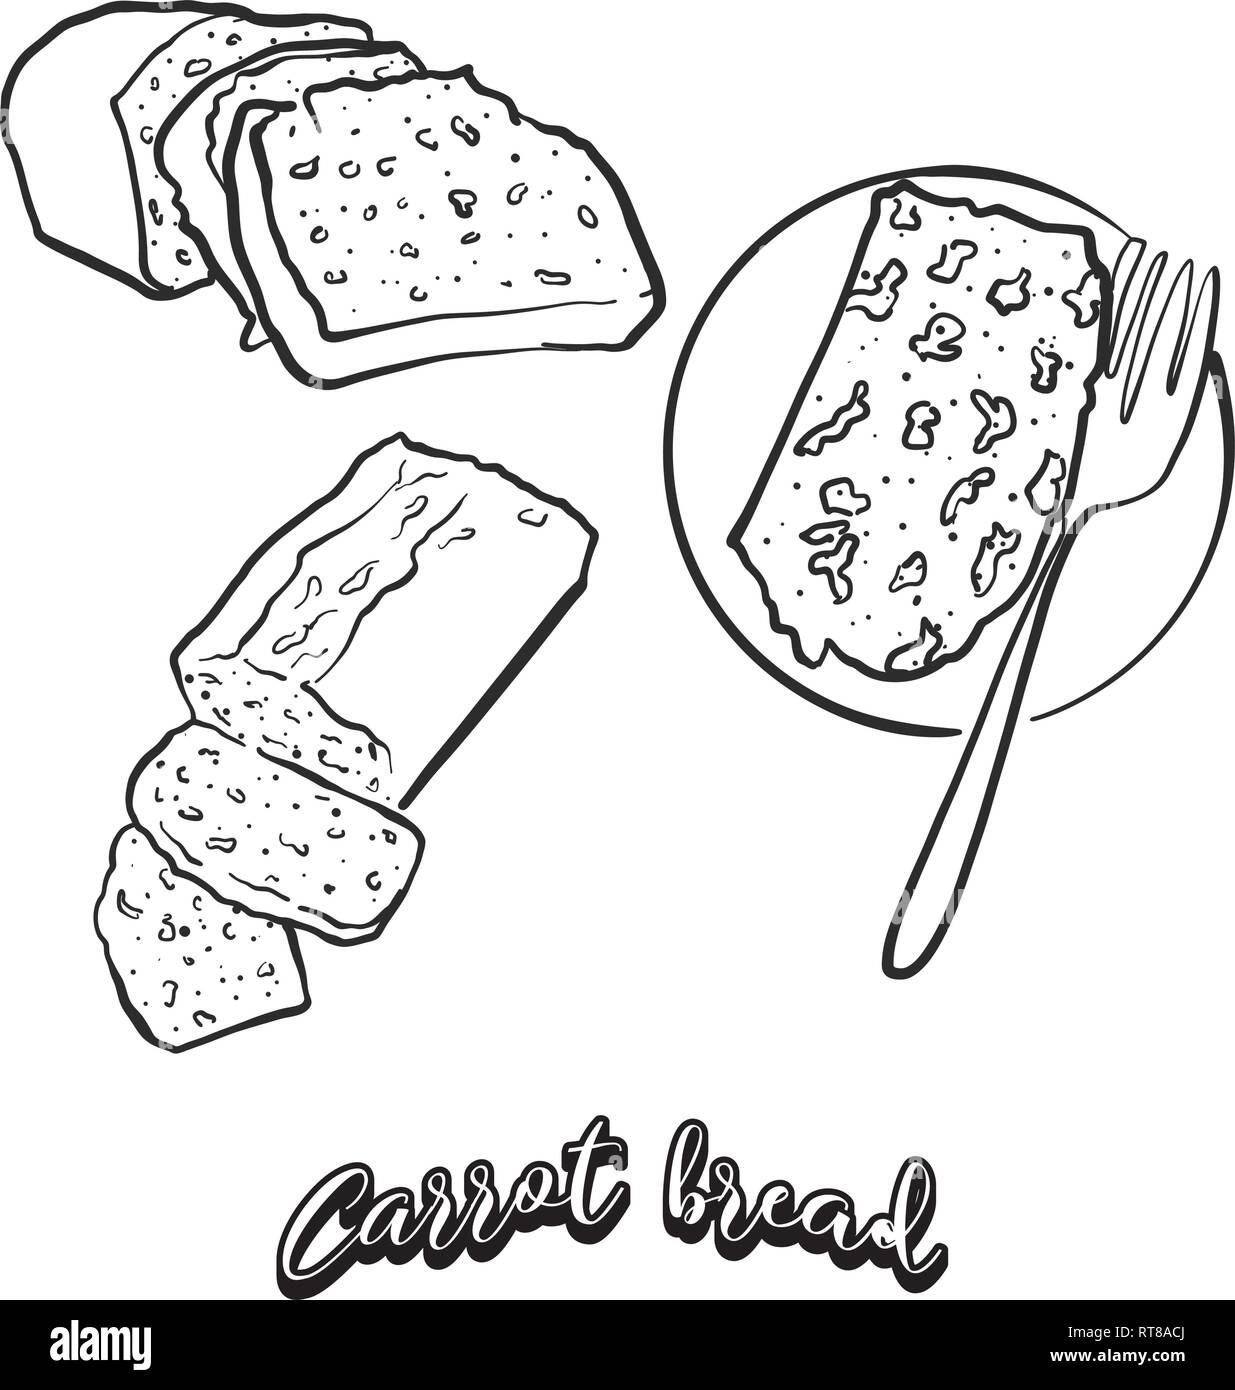 Hand gezeichnete Skizze von Karotte Brot Brot. Vektor Zeichnung der gesäuertes Essen, in der Regel in Irland bekannt. Brot Abbildung Serie. Stock Vektor